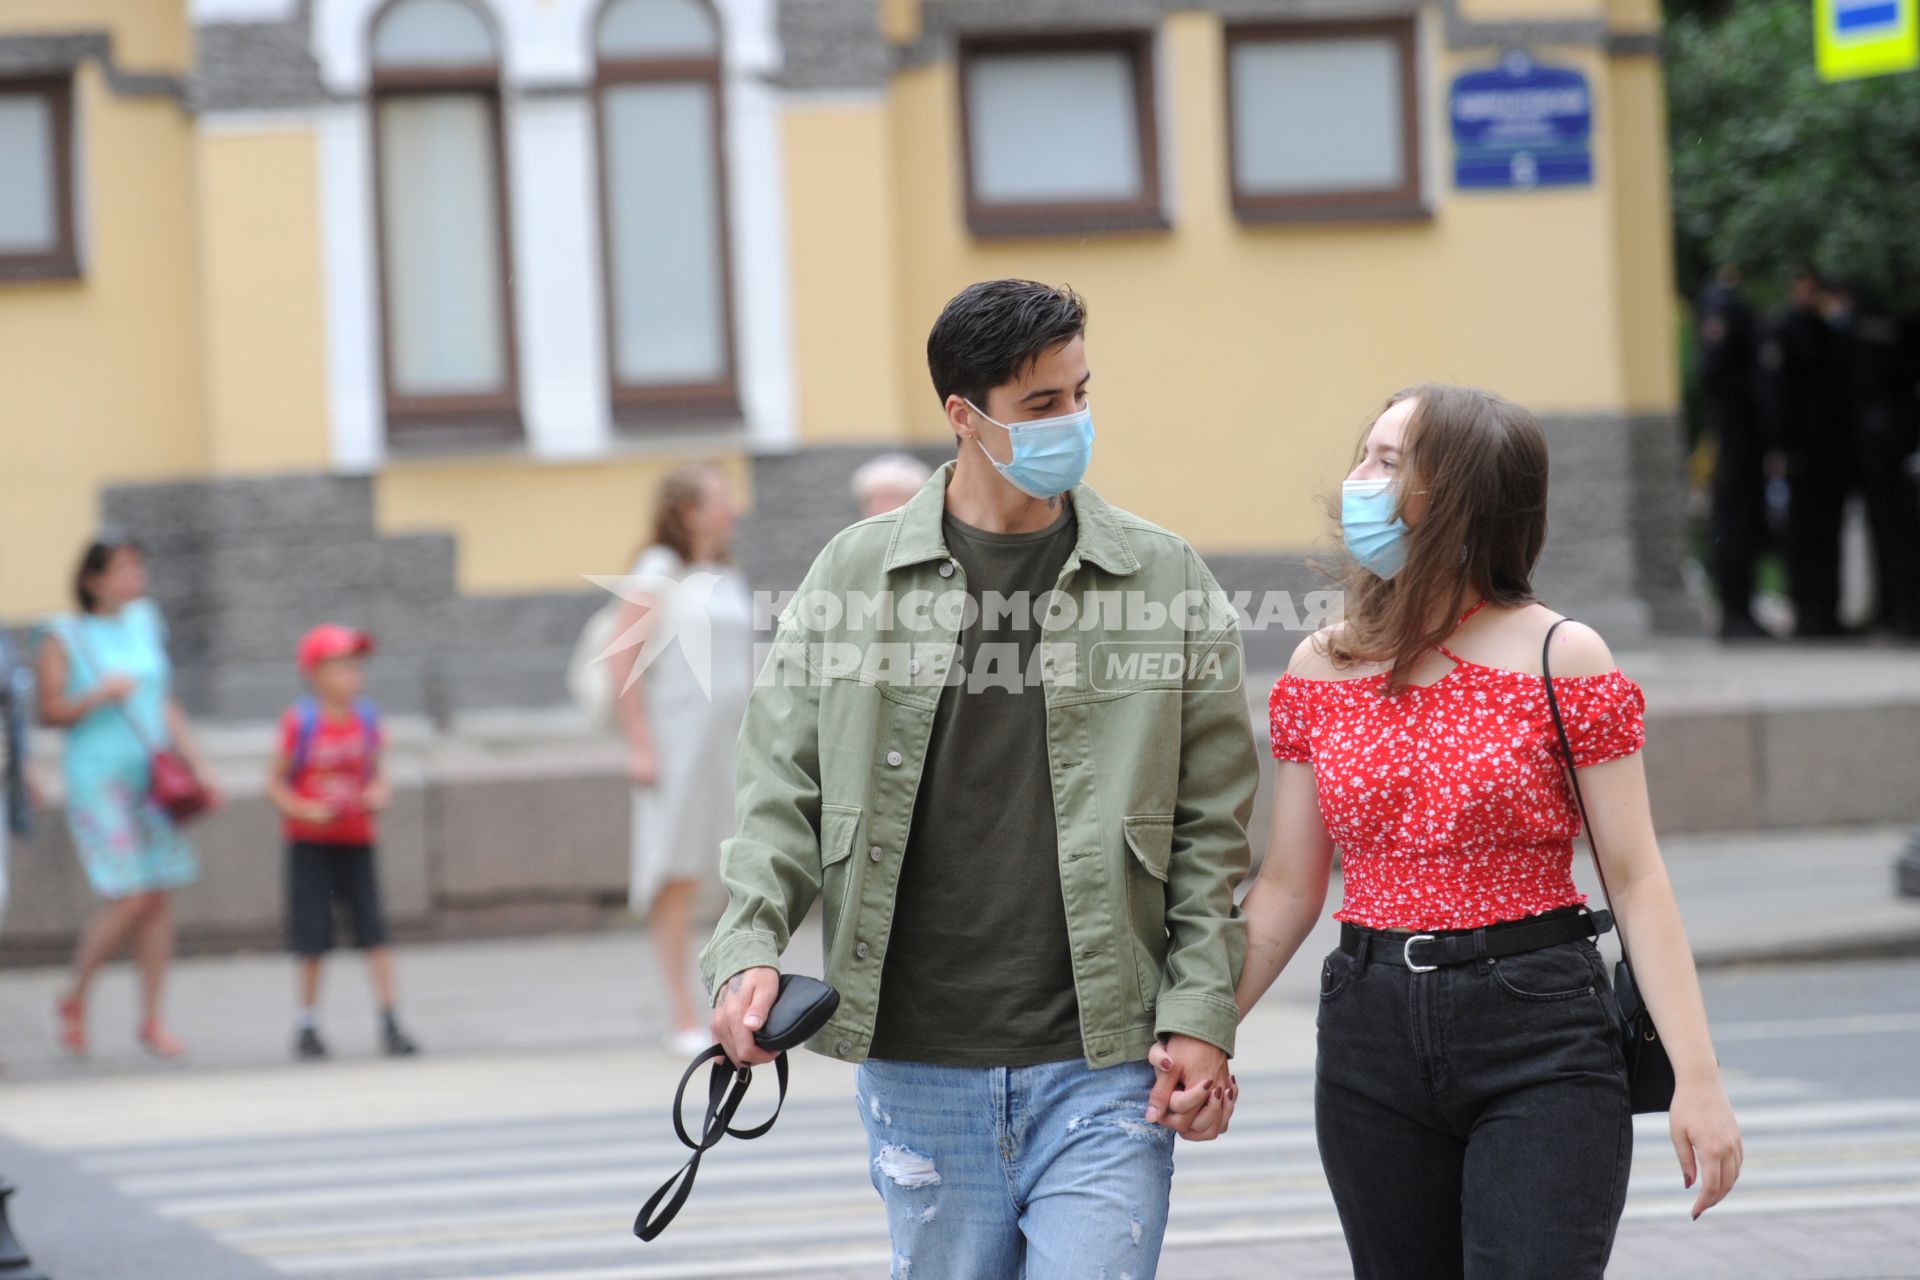 Санкт-Петербург. Парень с девушкой в защитных масках идут по пешеходному переходу взявшись за руки.